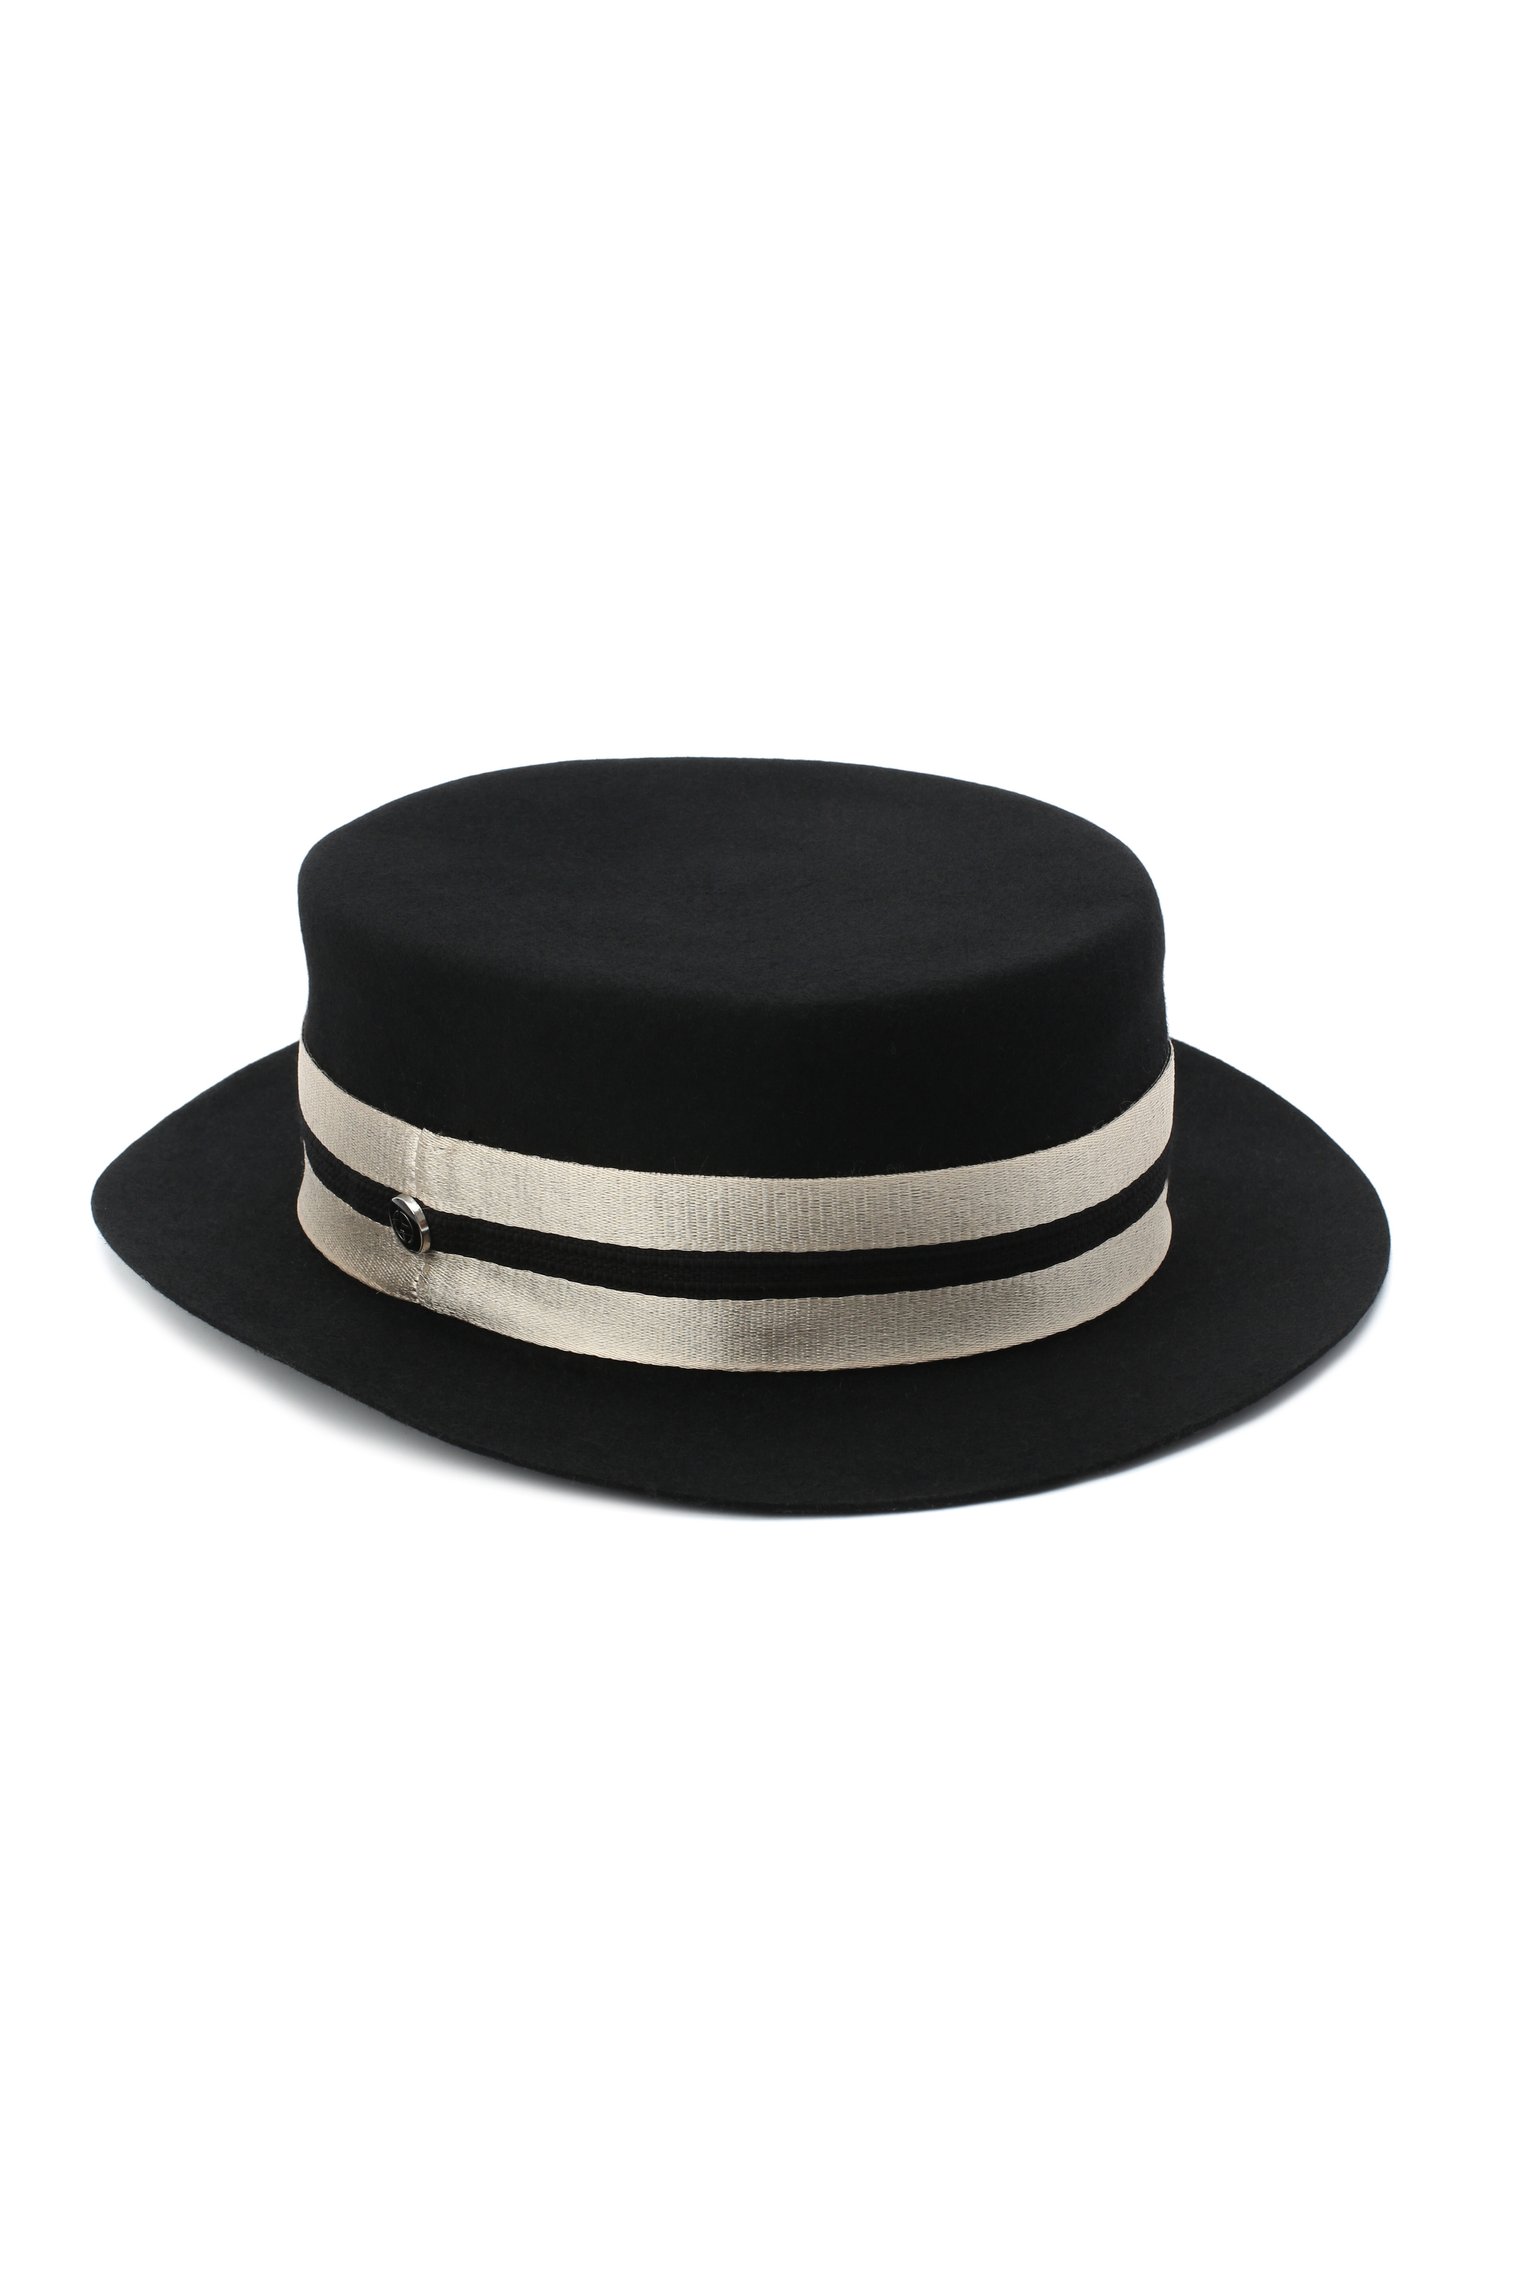 Как быстро преобразить простую соломенную шляпу в модный аксессуар